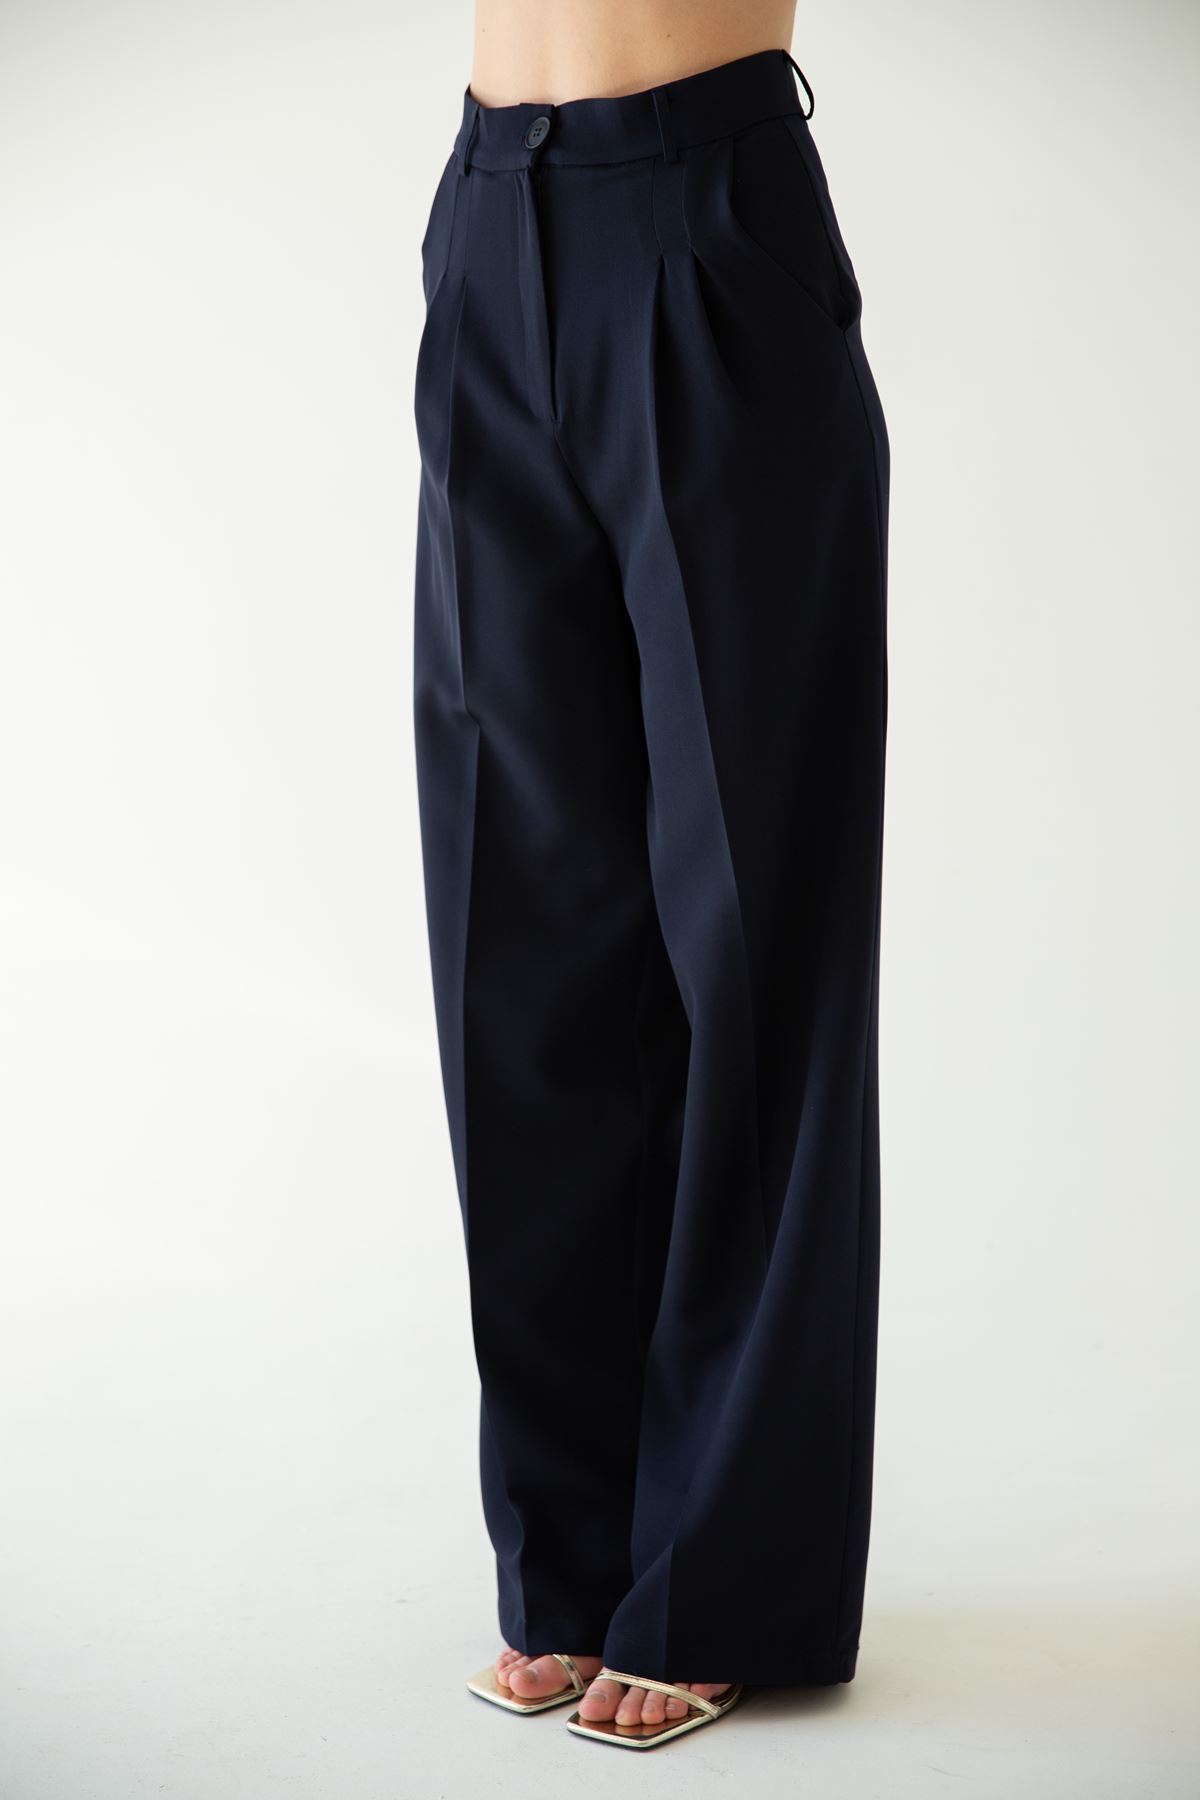 атлас ткань свободный покрой палаццо женские брюки-Темно синий